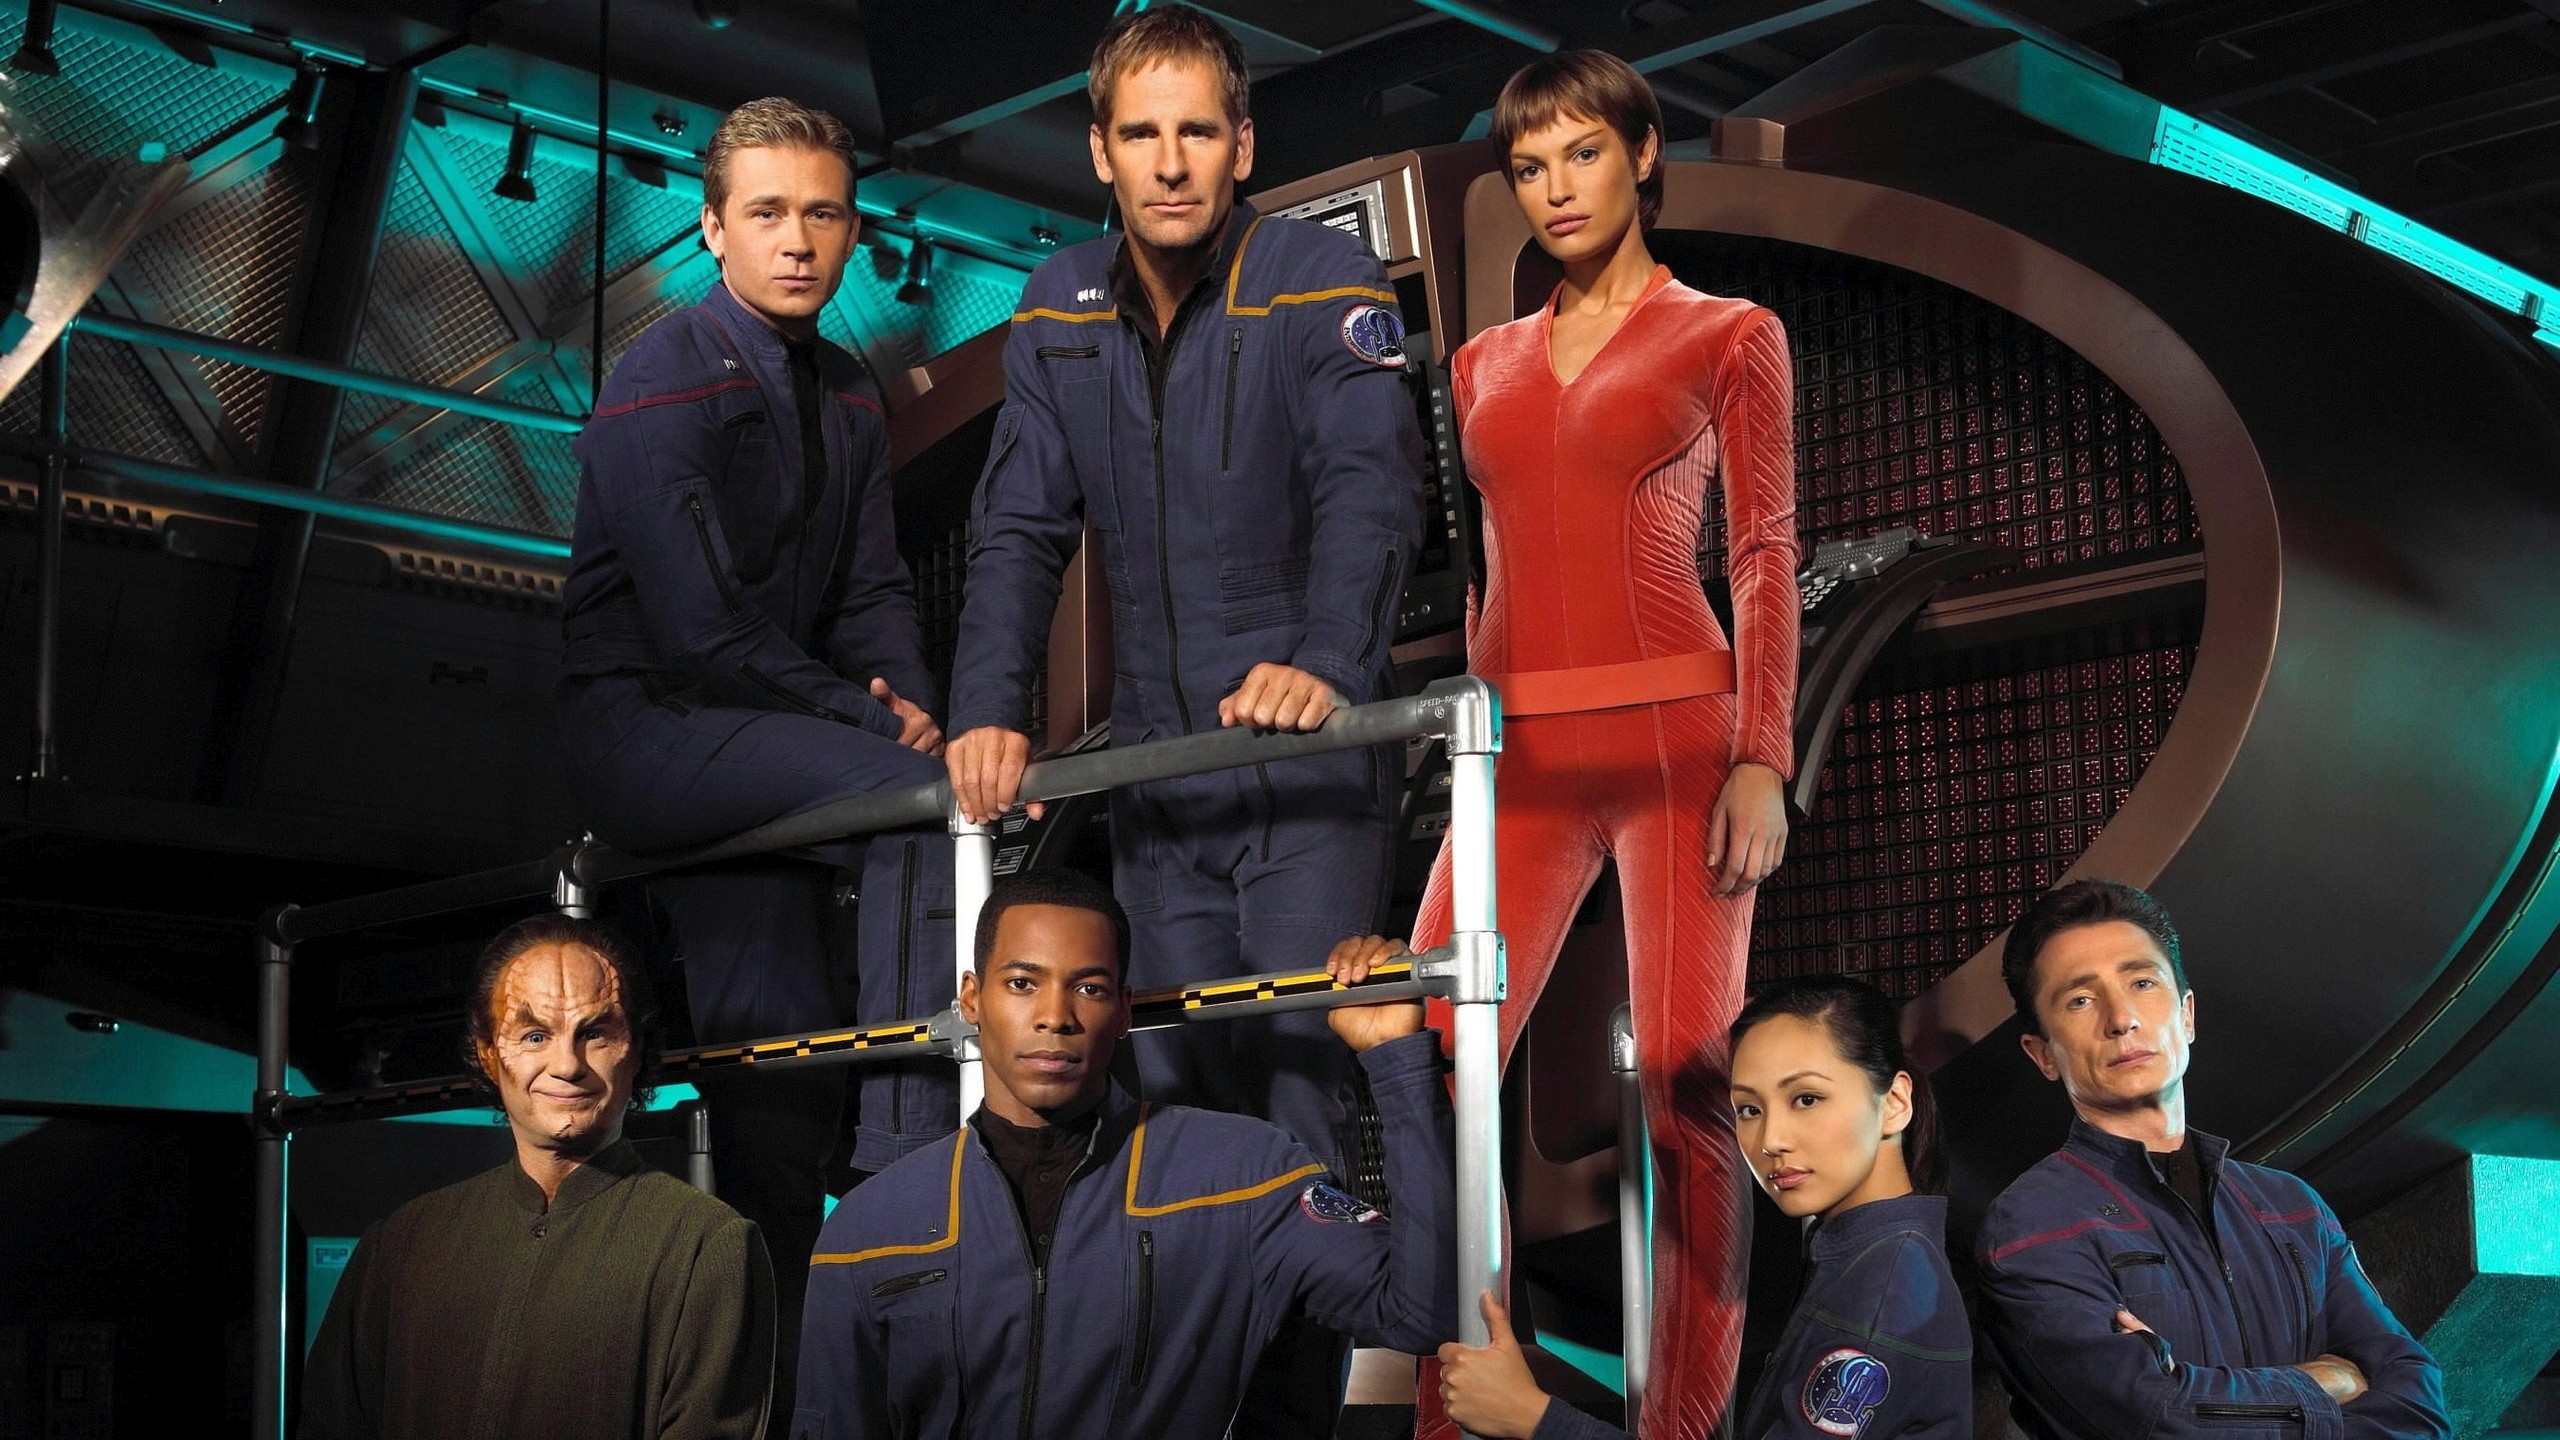 2560x1440 Star Trek: Enterprise Wallpaper